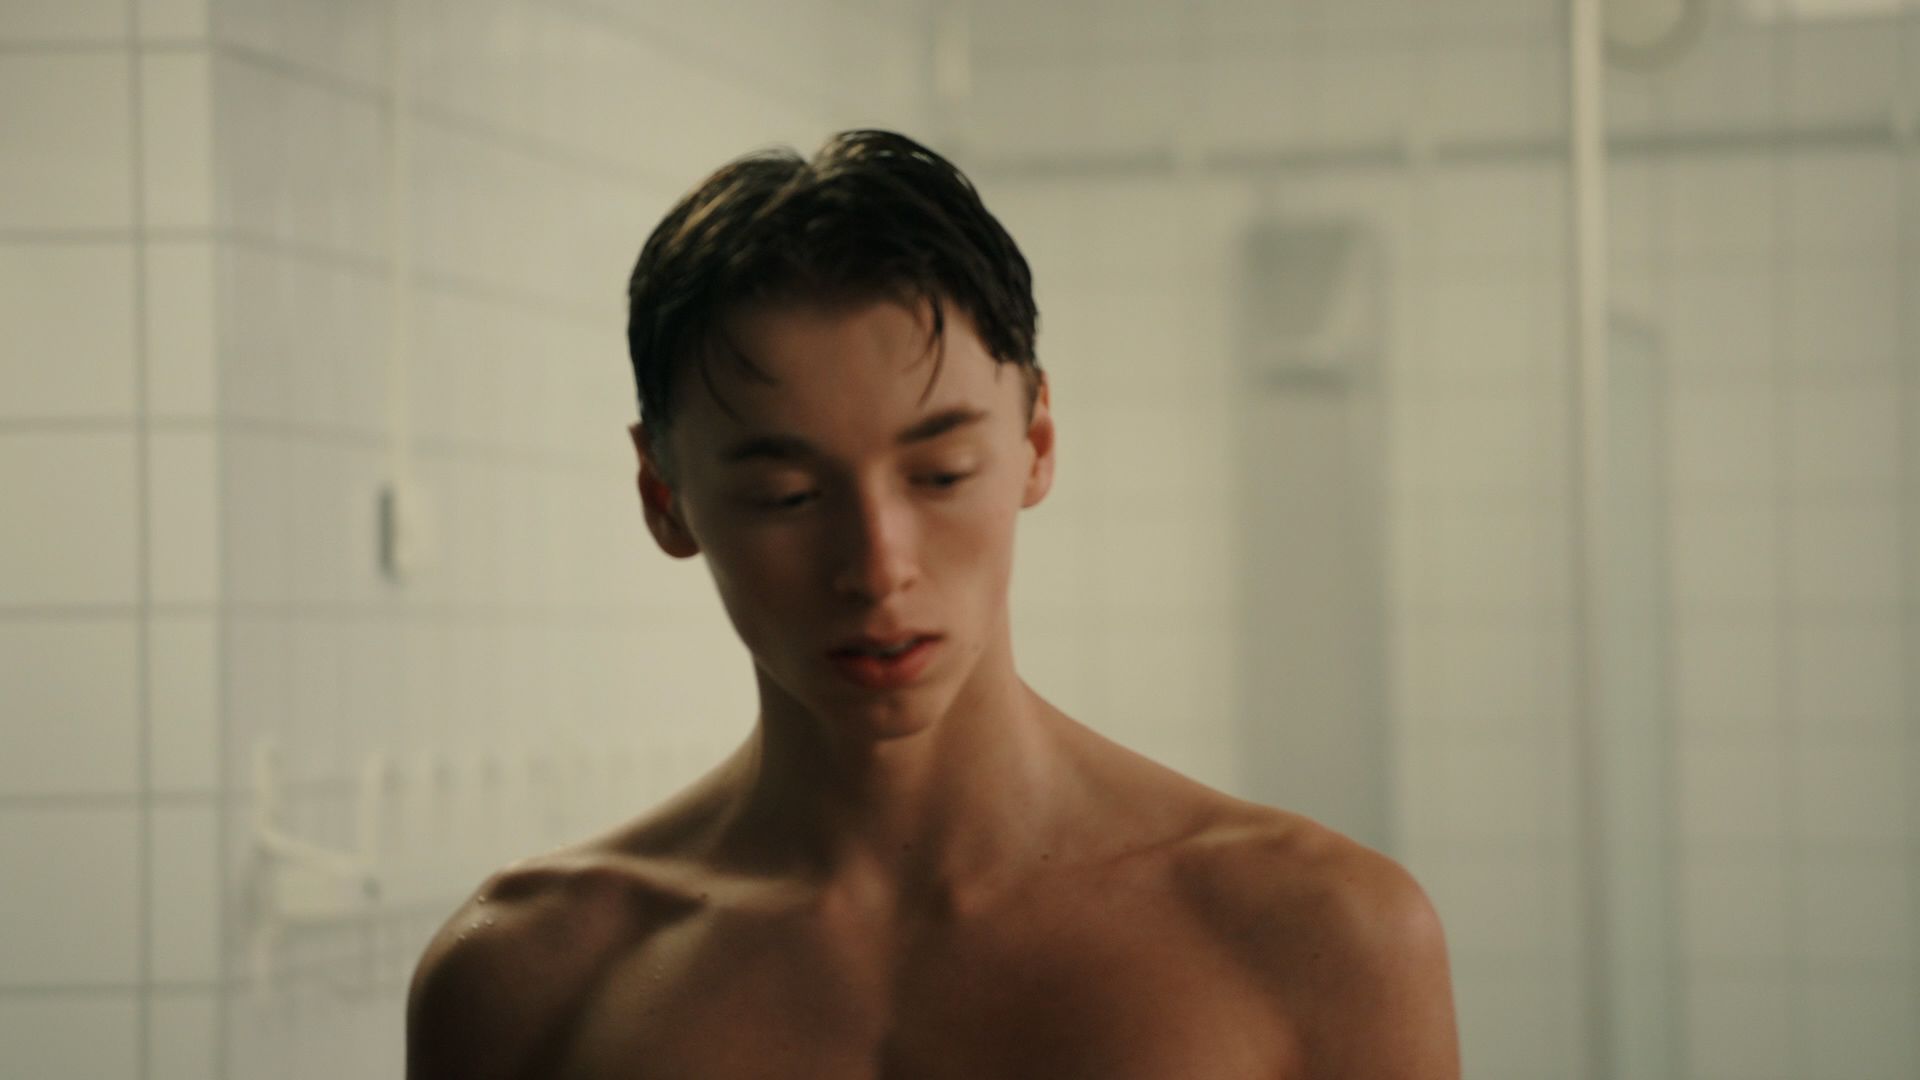 Stillbilde av en ung gutt fra filmen «Fortellinger fra dusjen» som handler om undgommers usikkerhet rundt egen kropp og selvfølelse i skolegarderoben